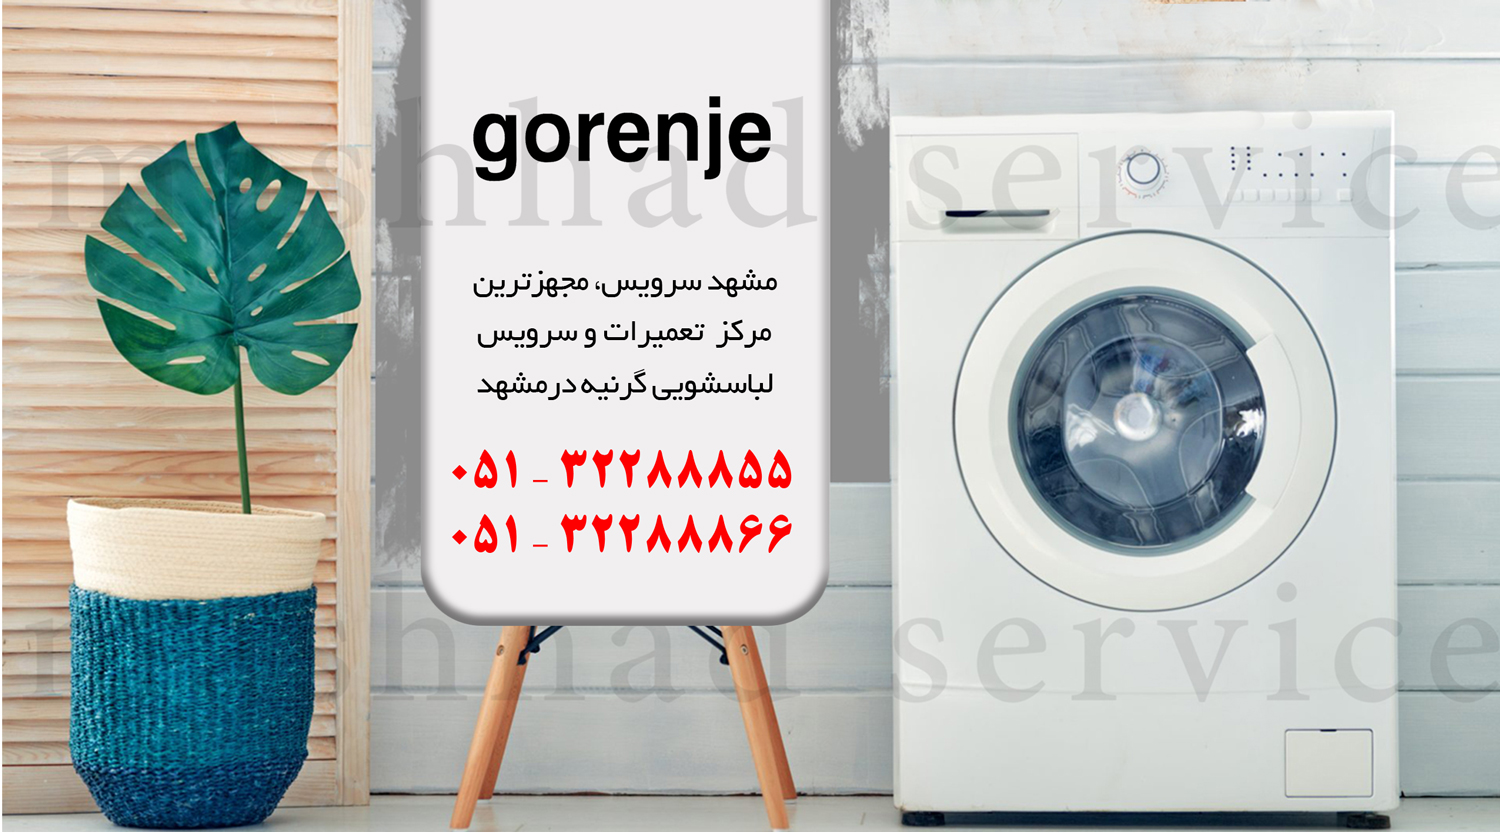 تعمیر ماشین لباسشویی گرنیه در مشهد